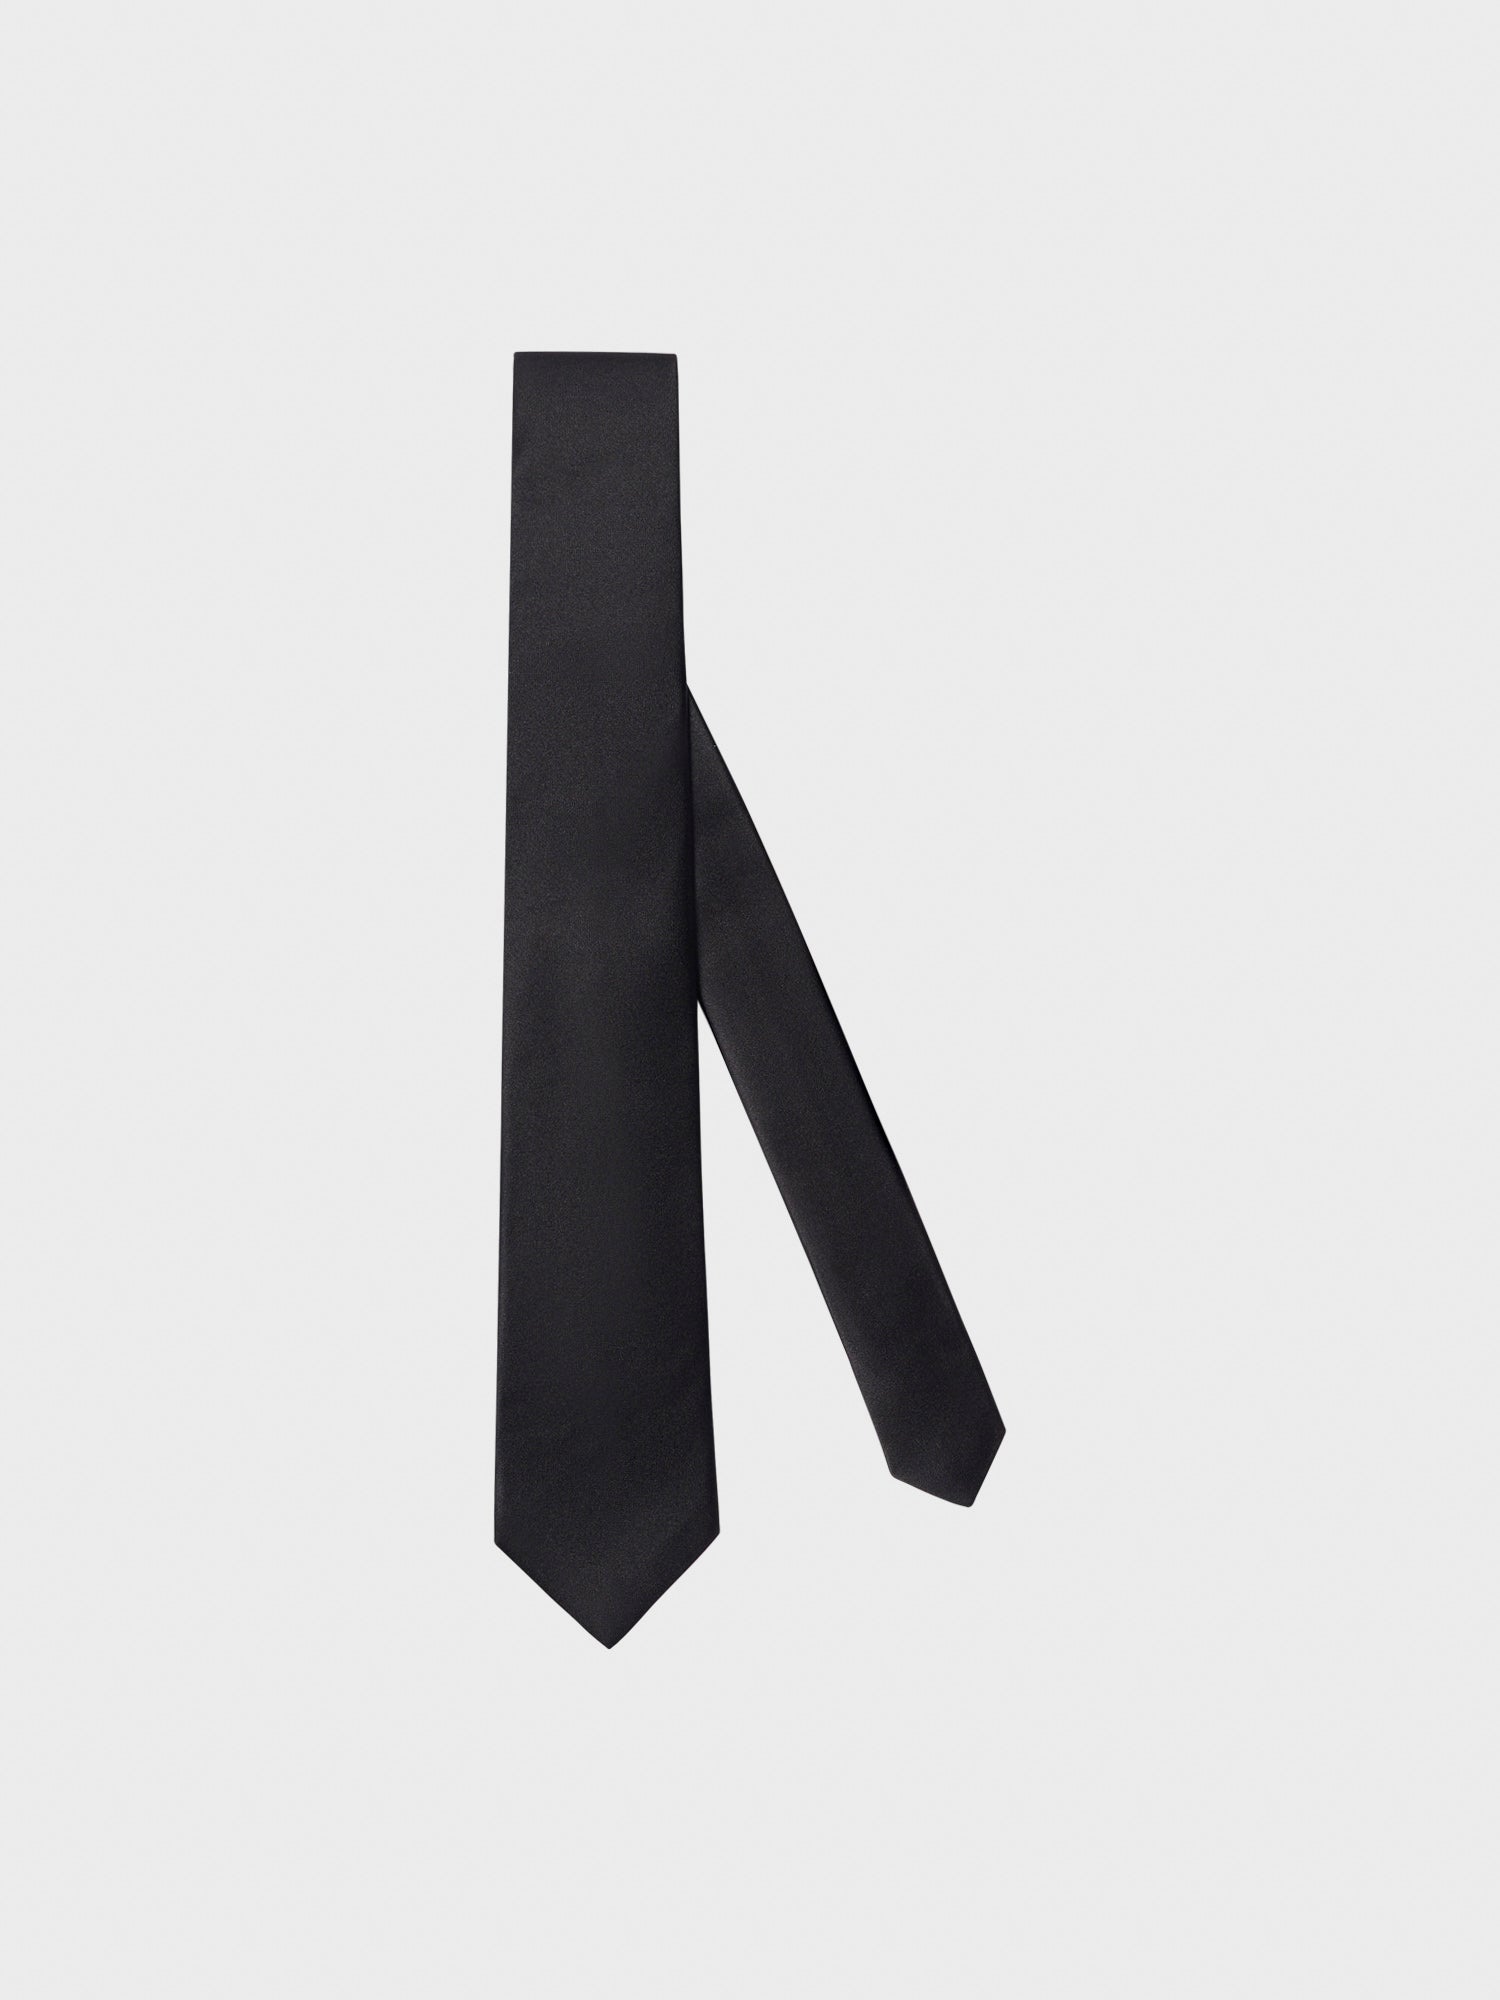 Caruso Menswear Abbigliamento Accessori Uomo Cravatta in seta nero da annodare per cerimonie still